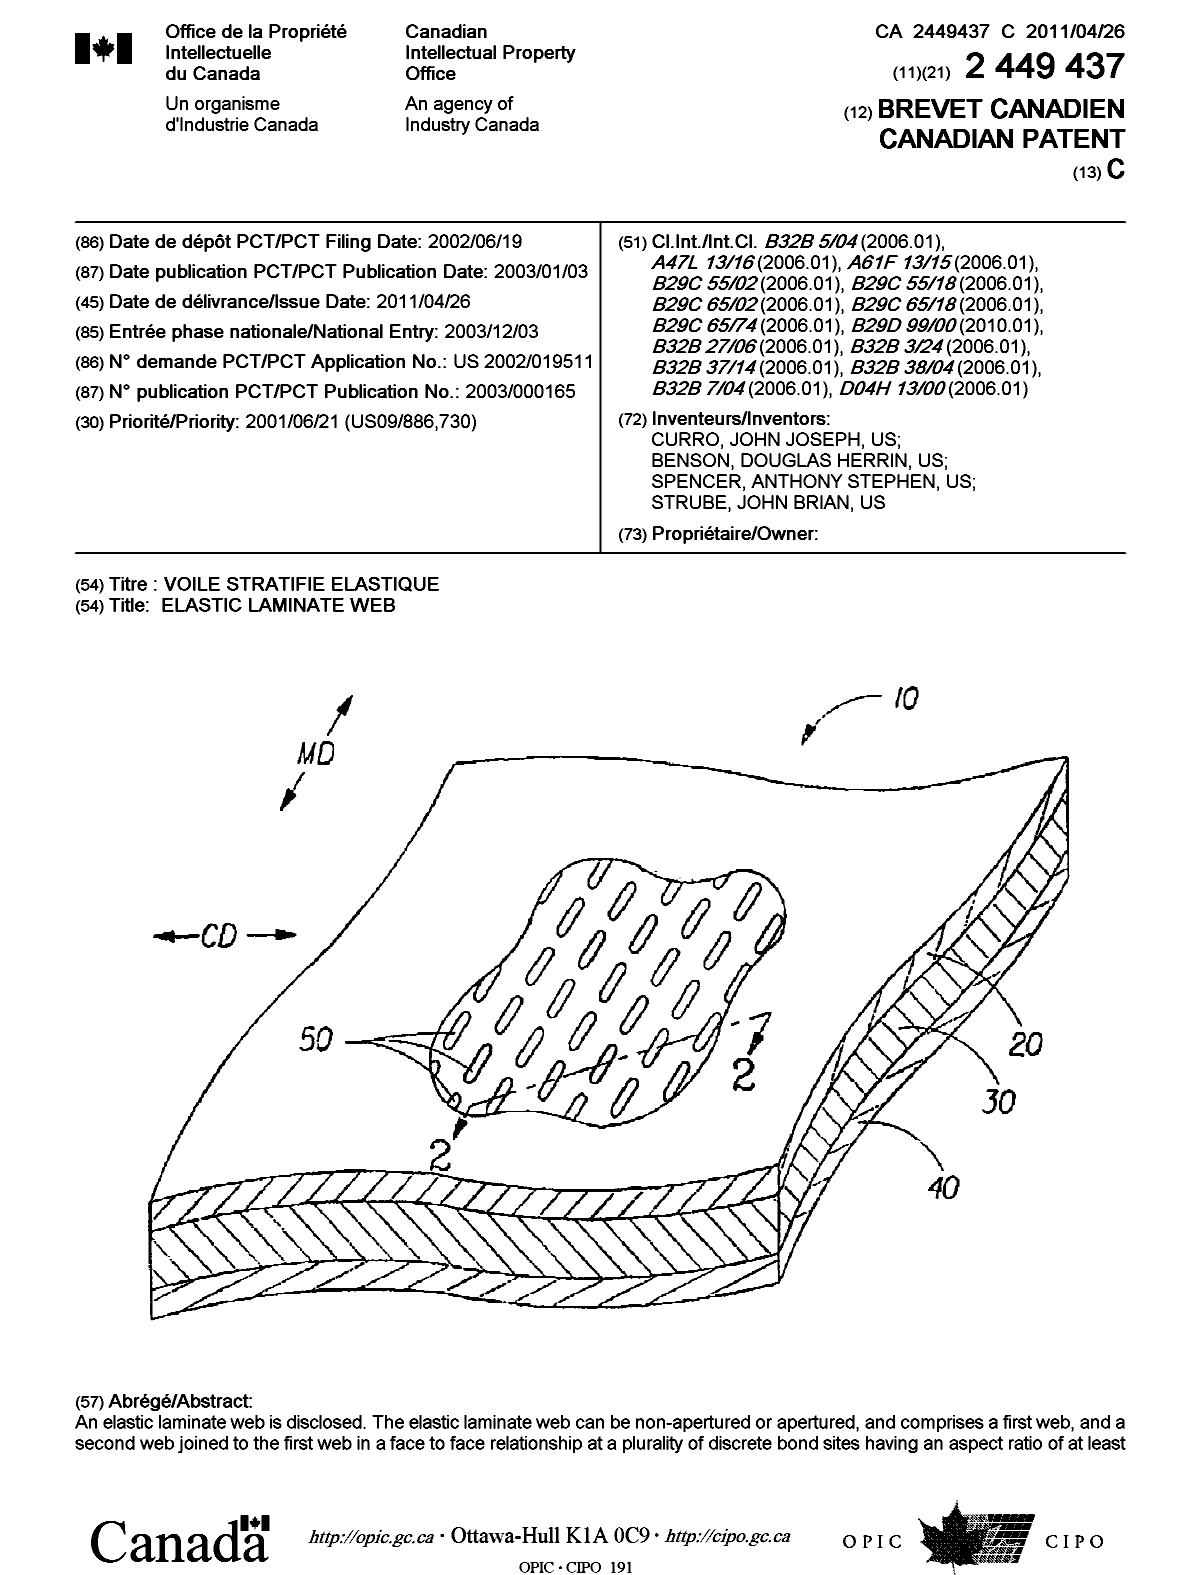 Document de brevet canadien 2449437. Page couverture 20110329. Image 1 de 2